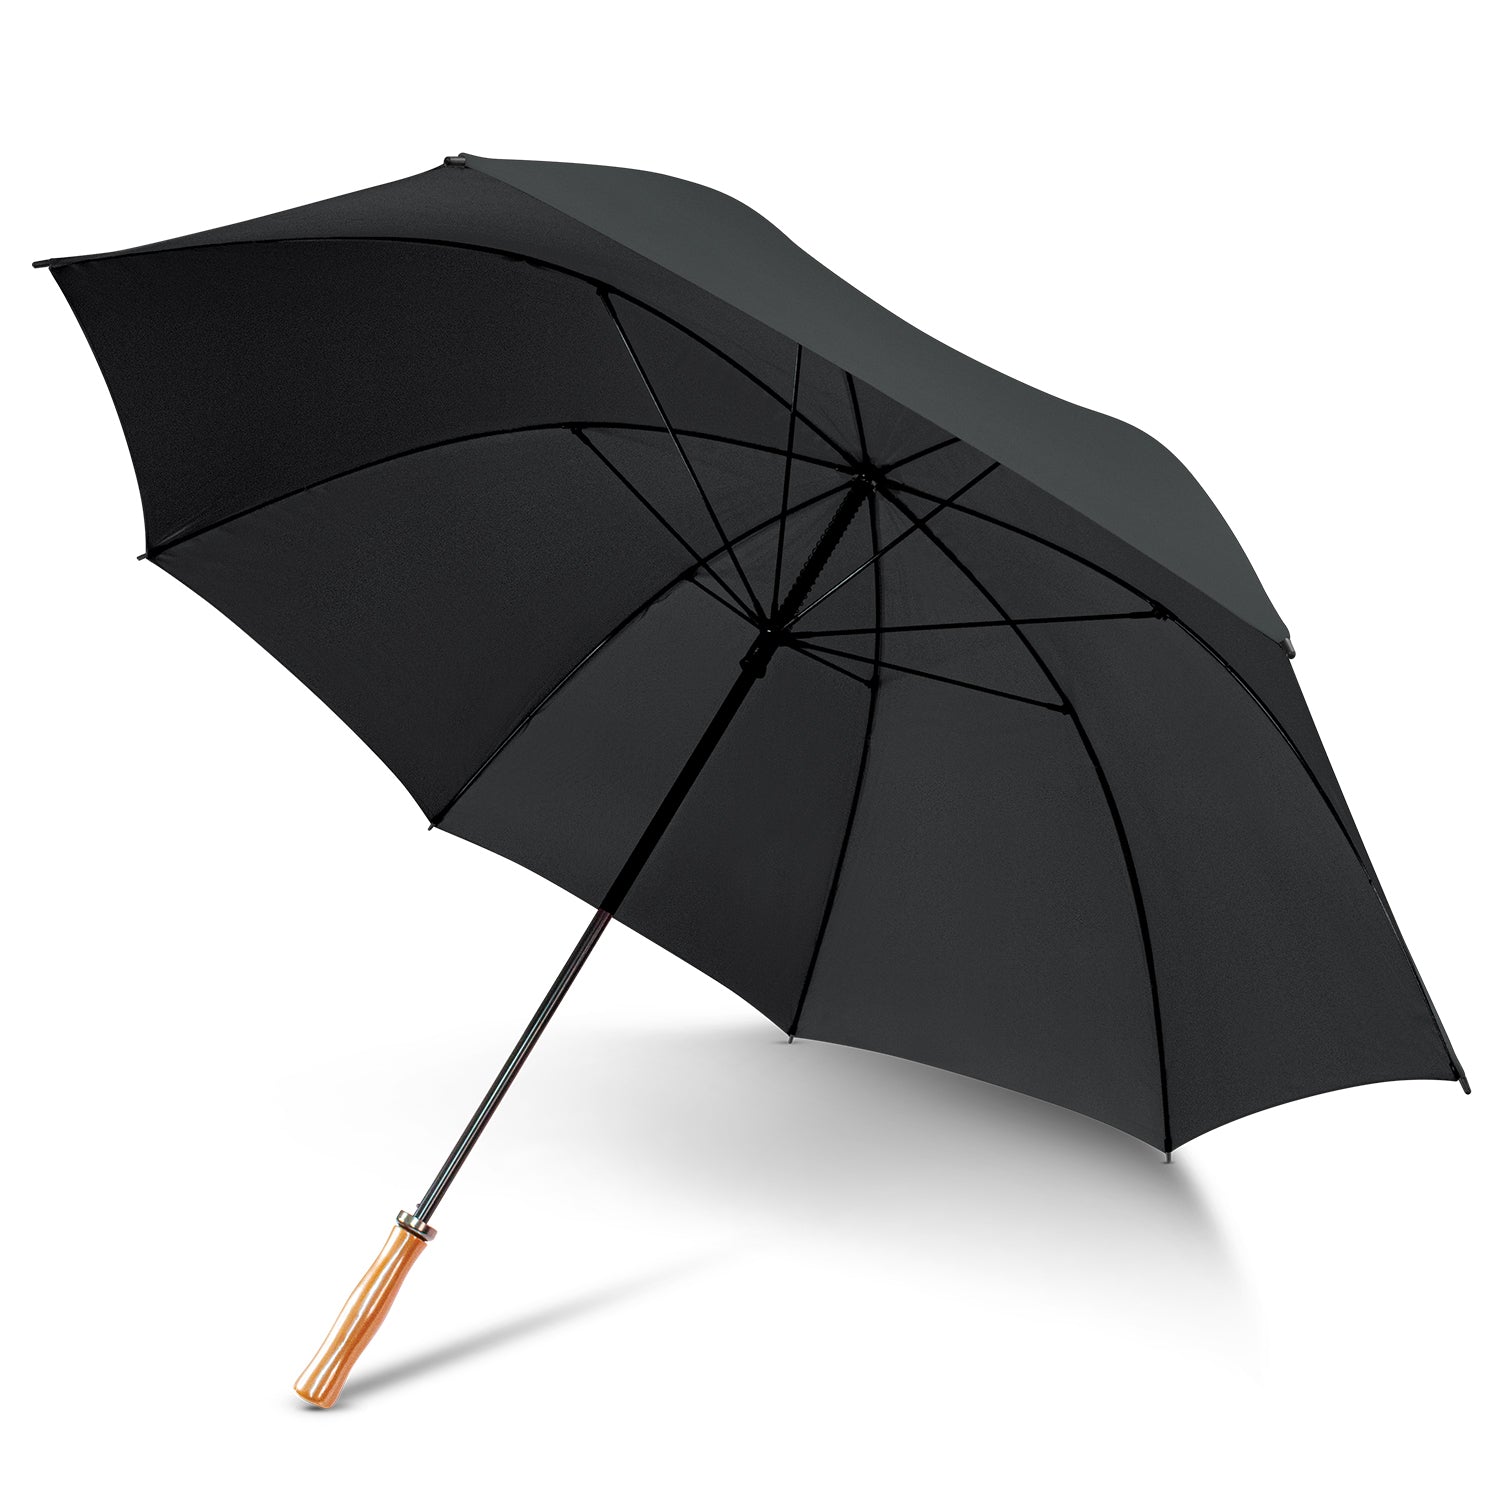 PEROS RainBrella PRO®️, Sports Umbrella, Golf Umbrella ...